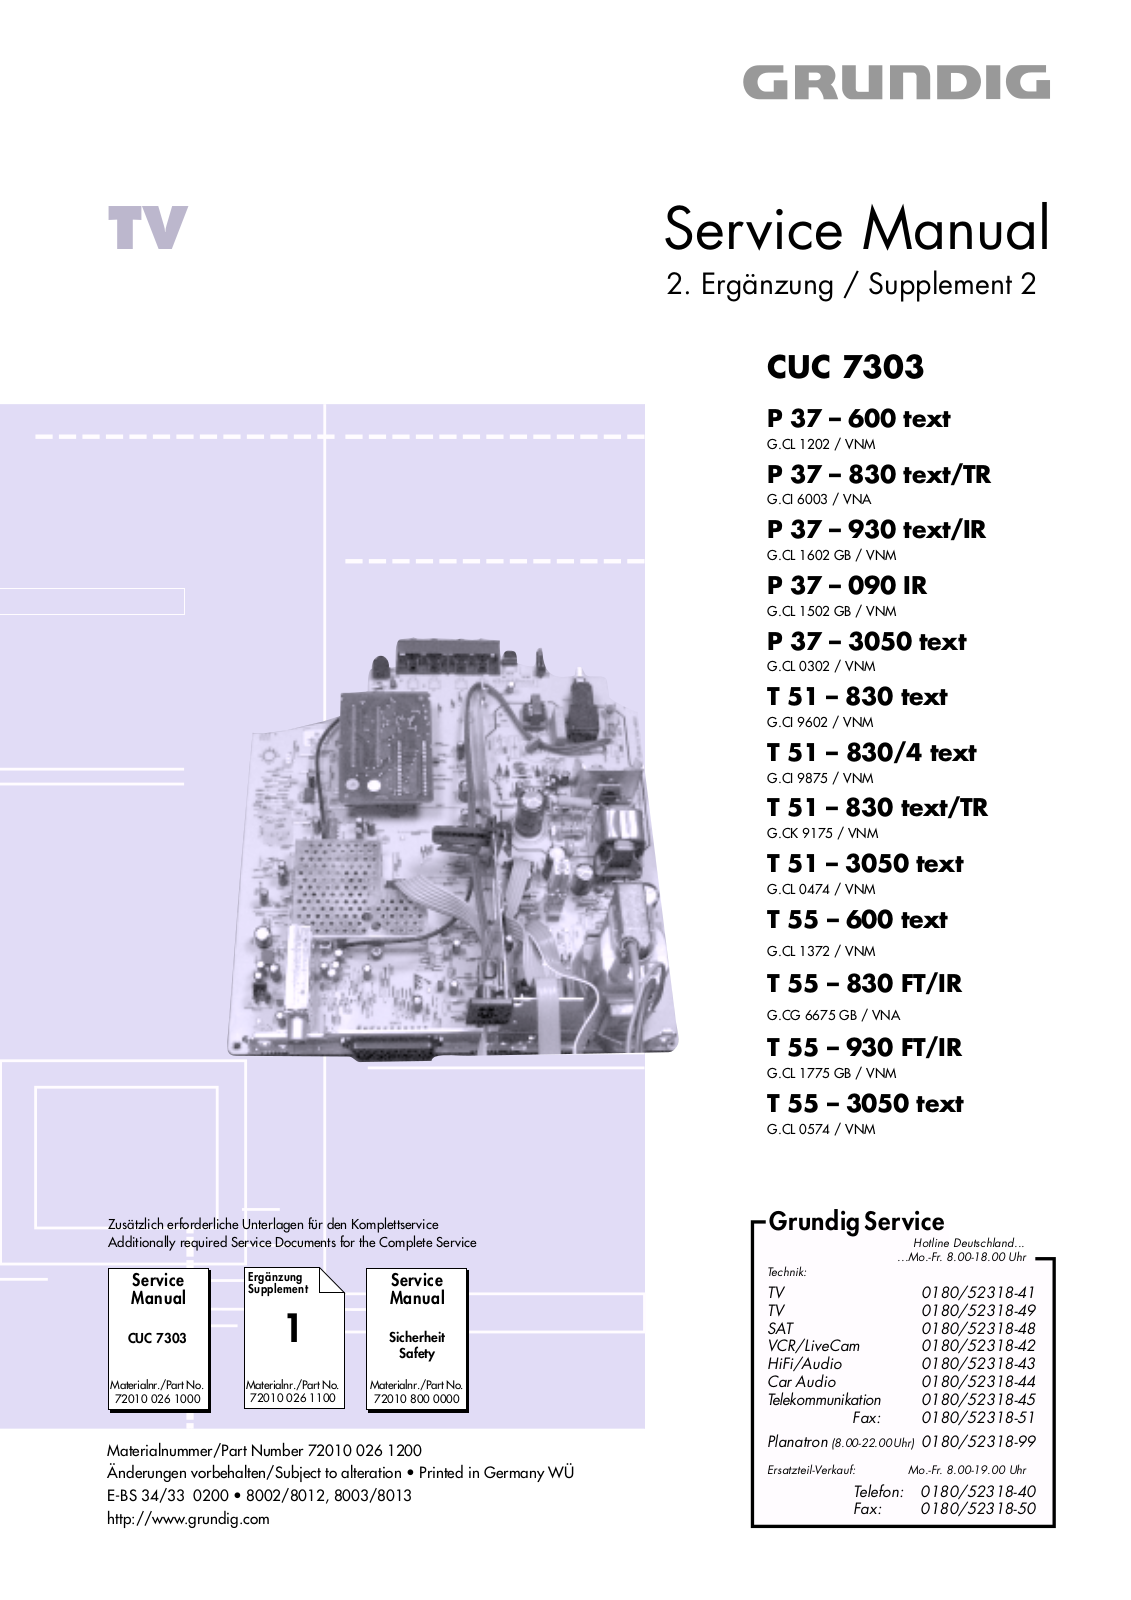 Grundig P 37 – 600, P 37 – 830 -TR, P 37 – 930 -IR, P 37 – 090 IR, P 37 – 3050 Service Manual